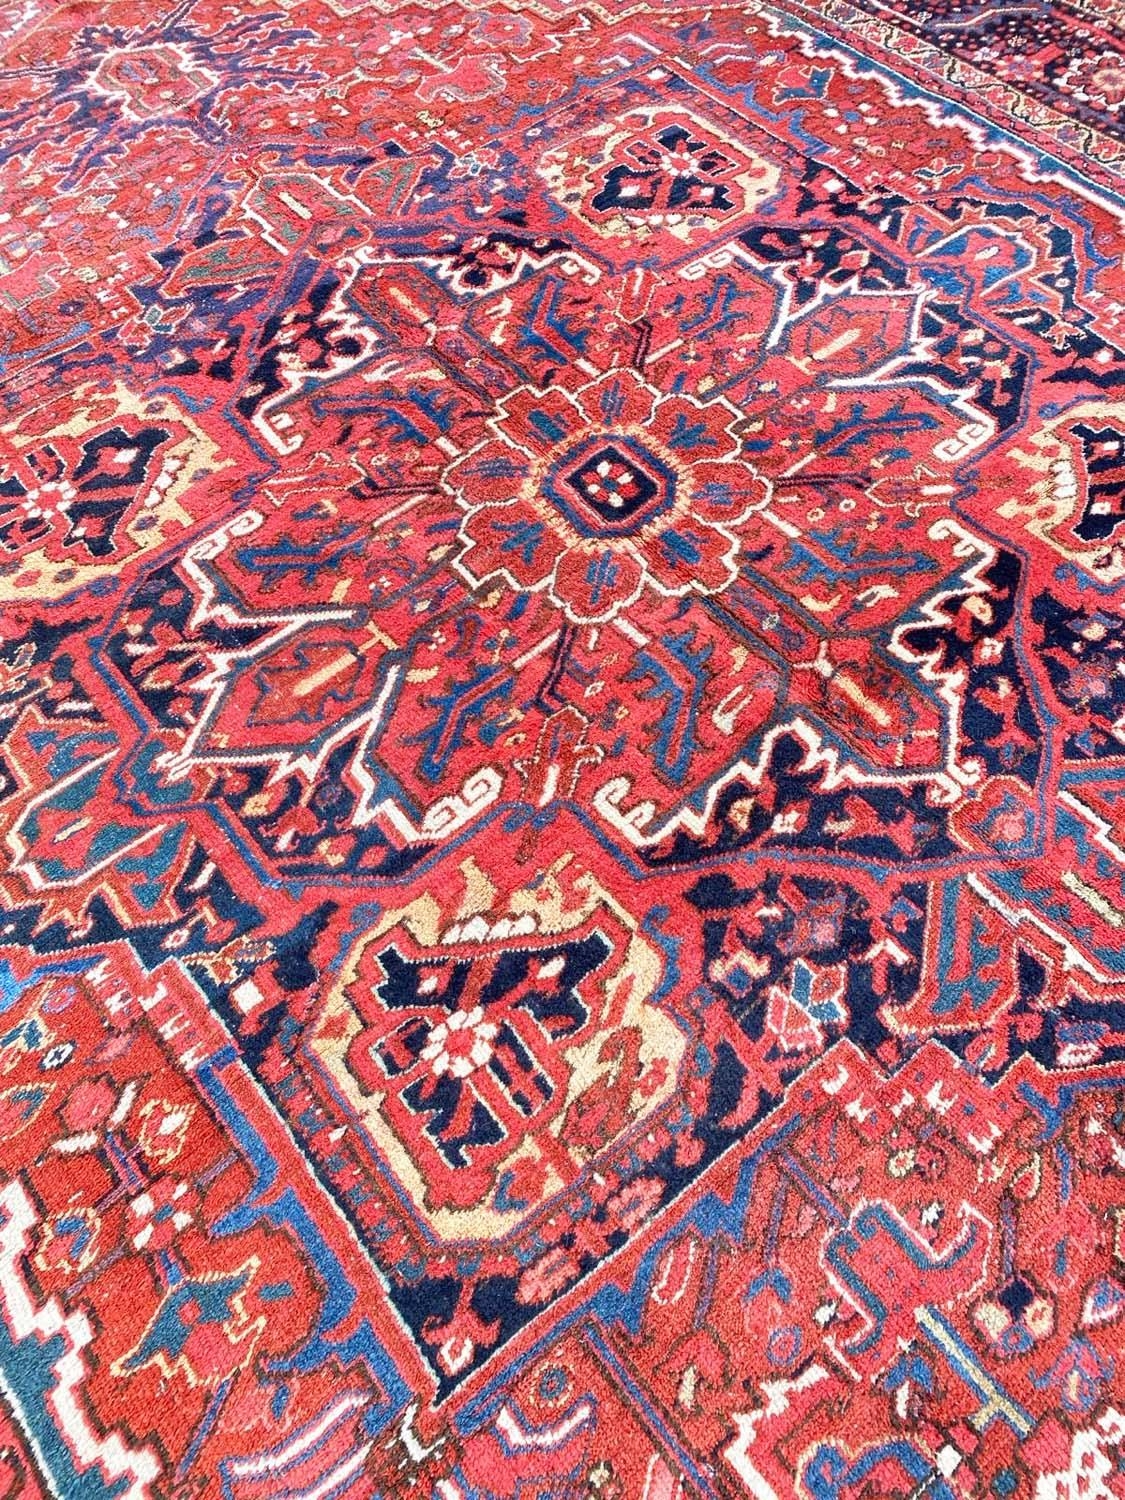 ANTIQUE PERSIAN HERIZ CARPET, 410cm x 299cm. - Image 2 of 7